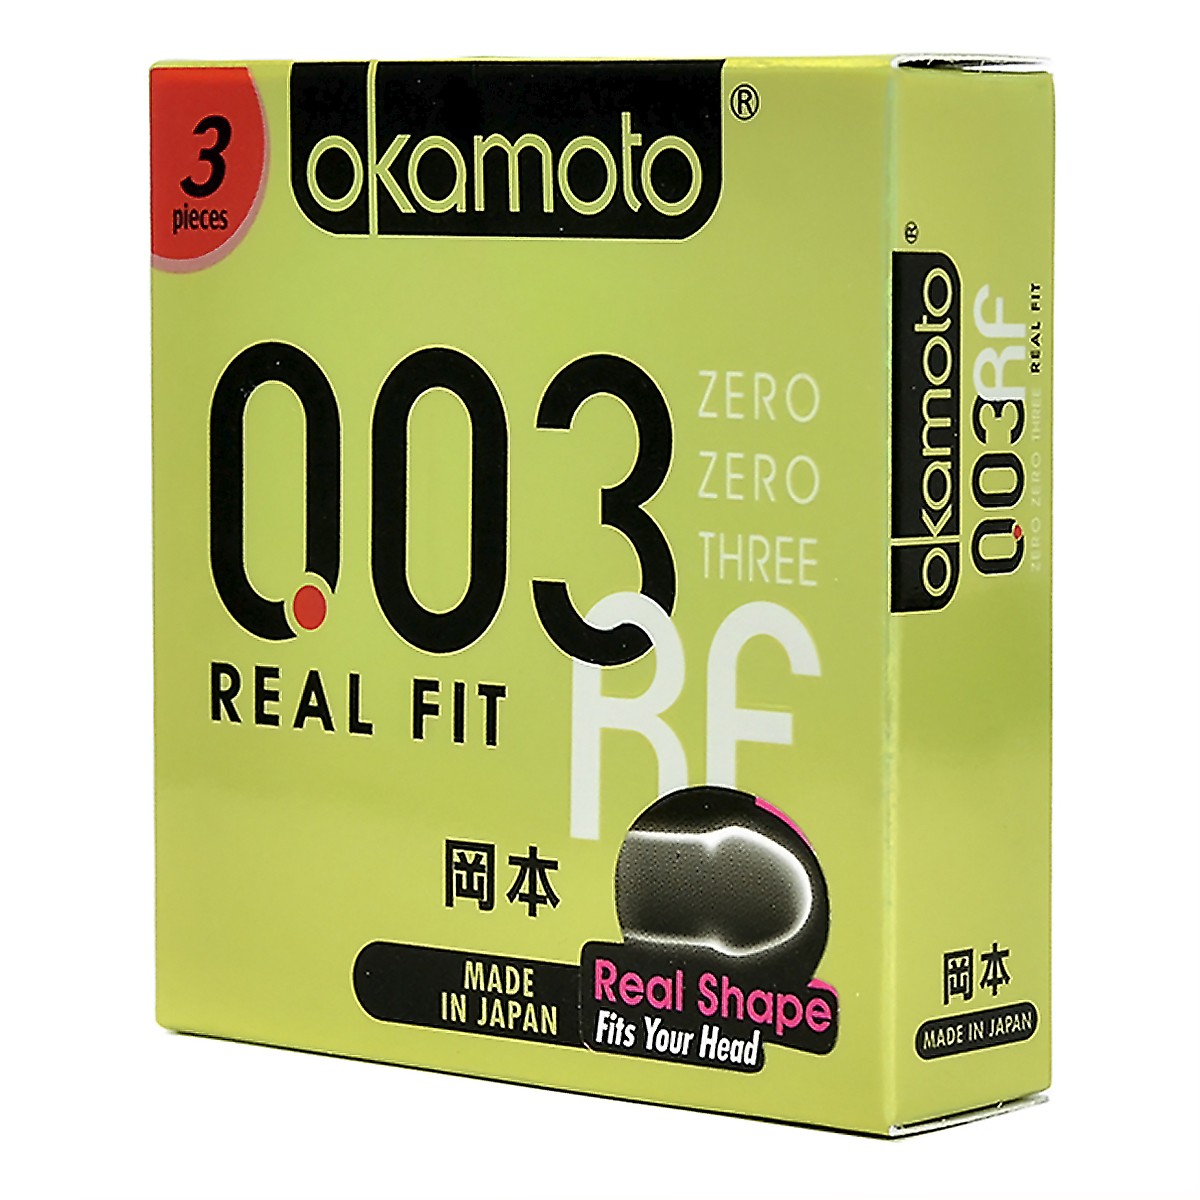 Bao cao su siêu mỏng co rút gấp đôi Okamoto 0.03 Real Fit - Hộp 3 cái -  Sian.vn 쇼핑 센터